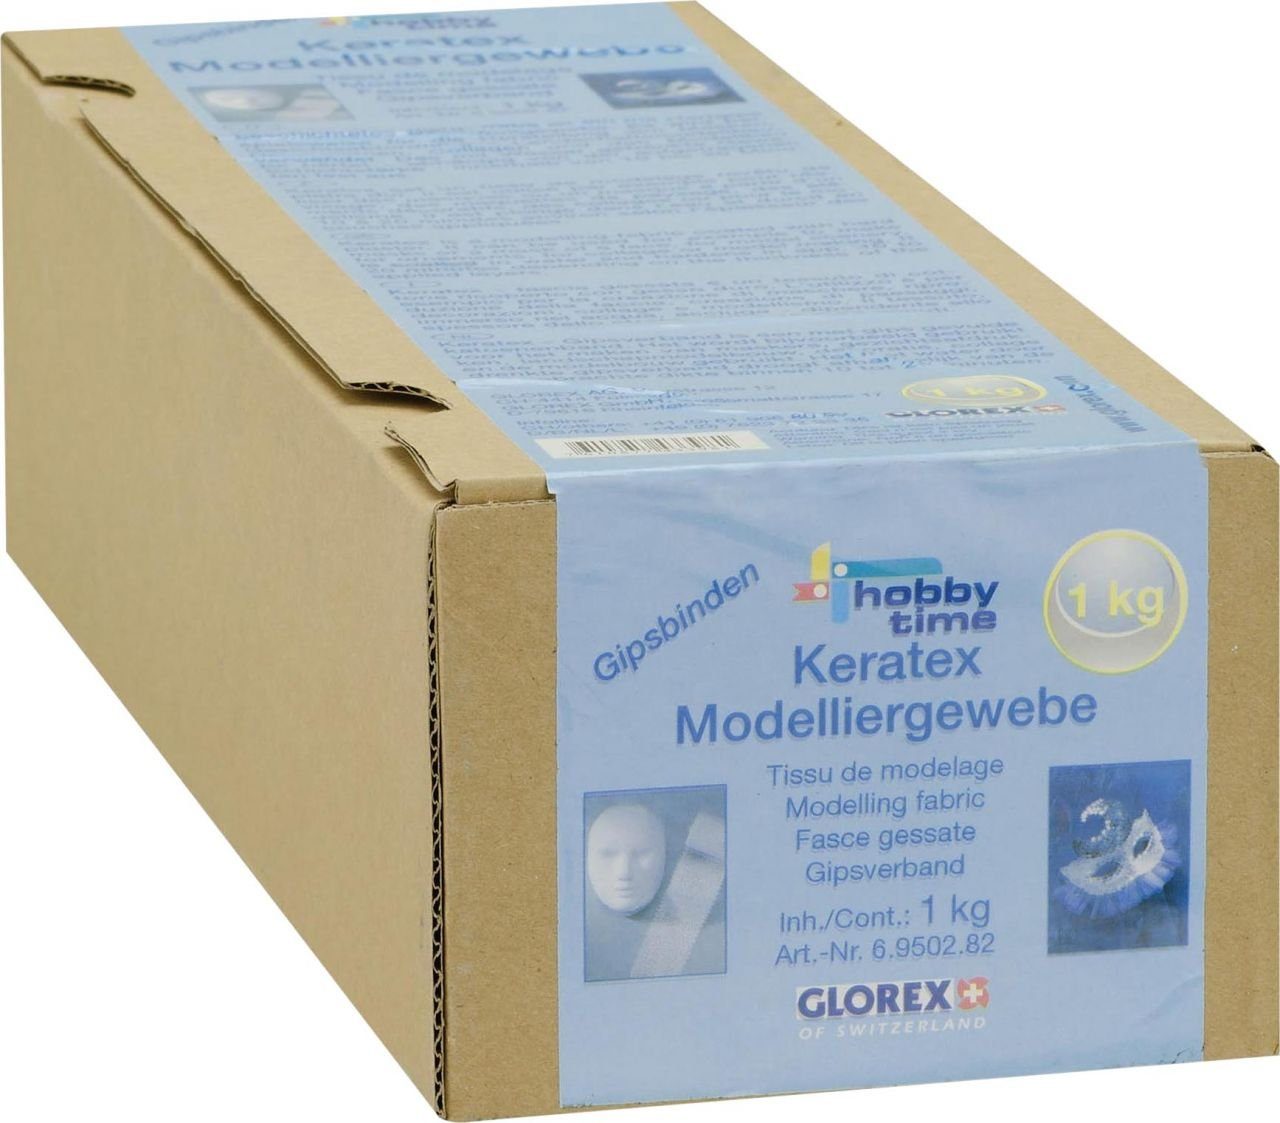 Glorex Bastelnaturmaterial Glorex Gipsbinden Grosspackung 1 kg, 5 Rollen à 5m